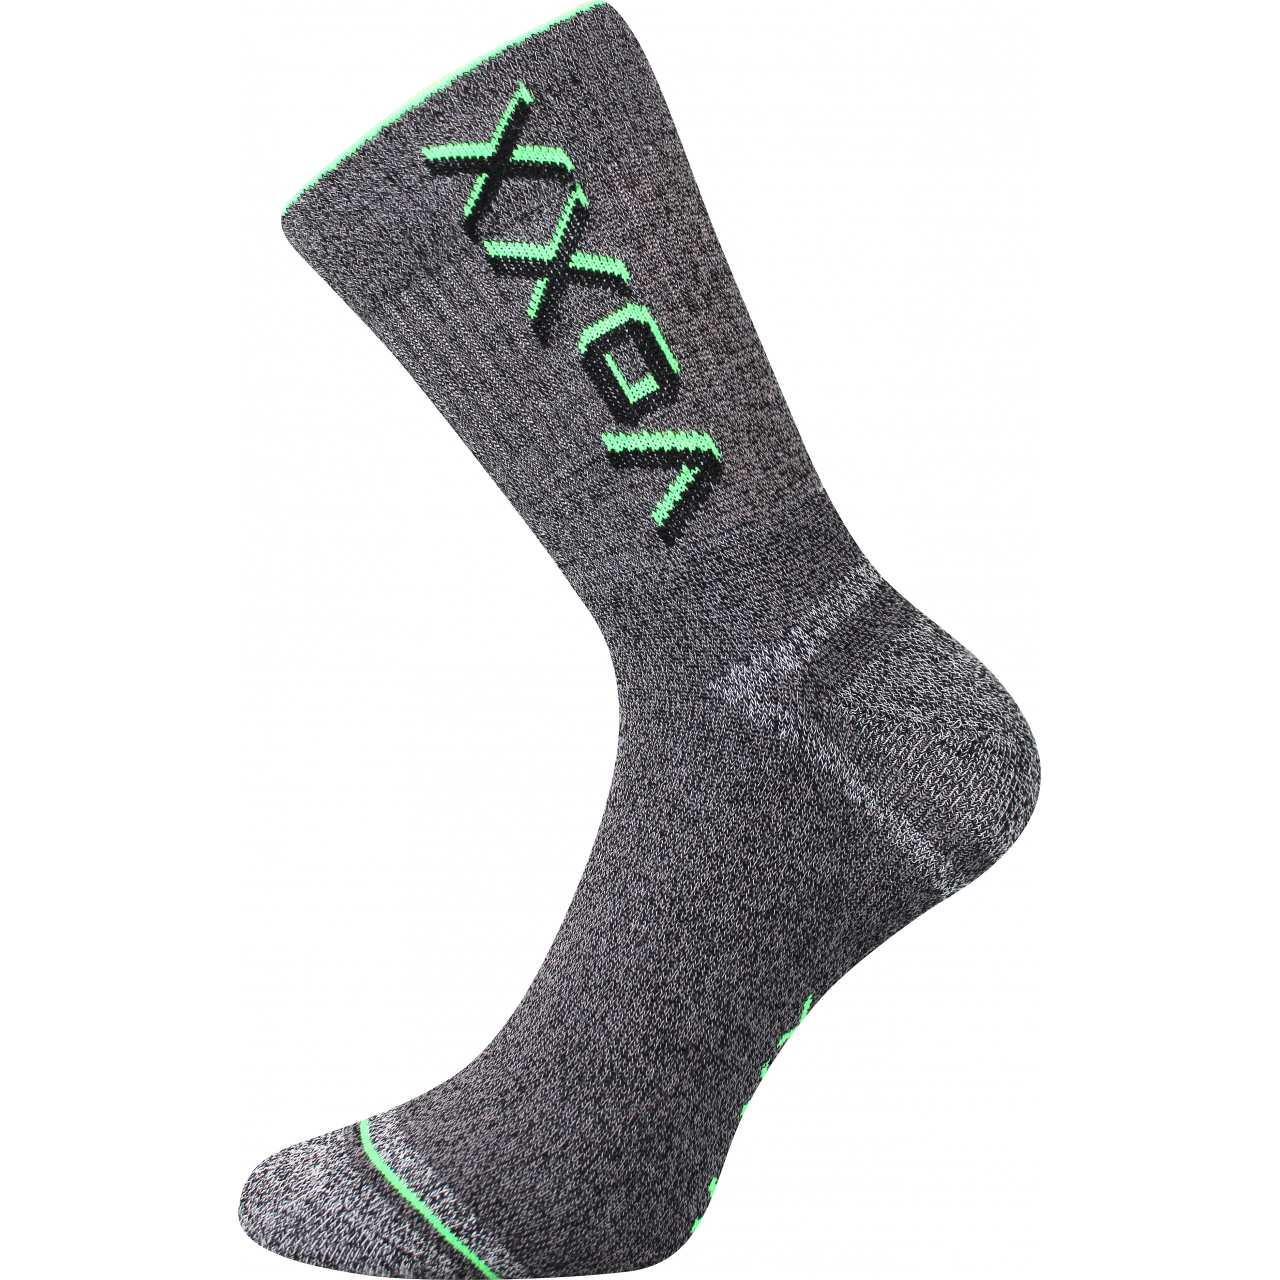 Ponožky unisex froté Voxx Hawk - šedé-zelené, 43-46